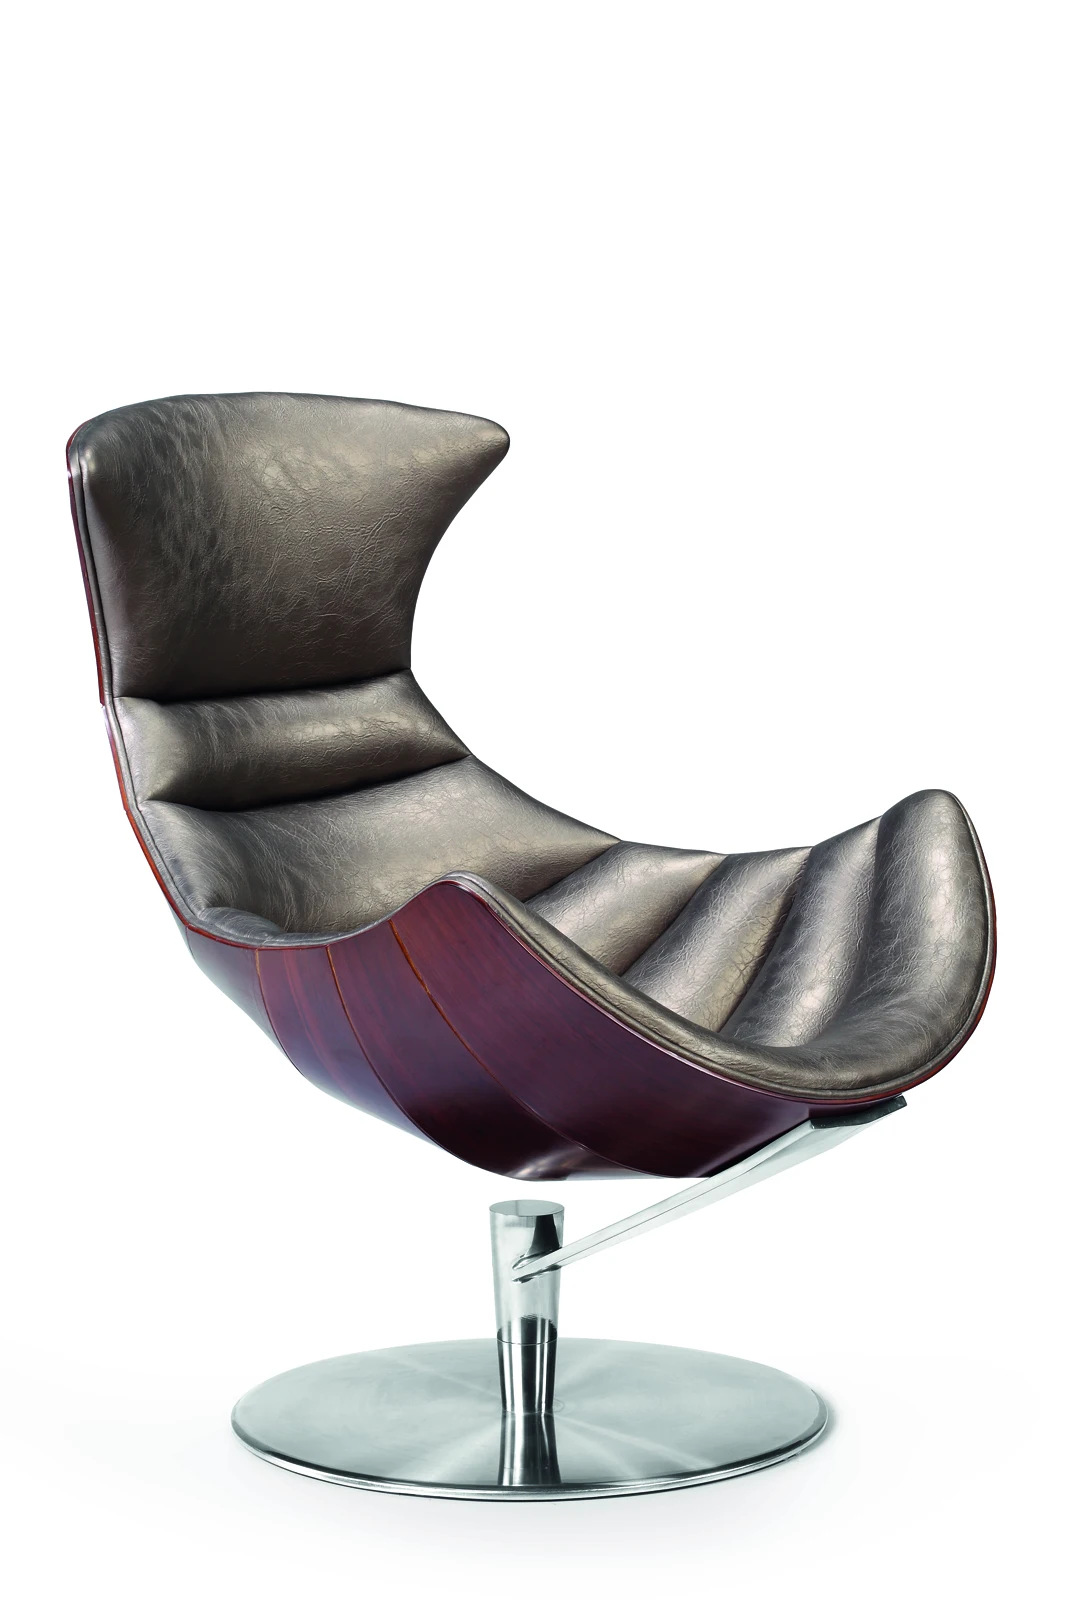 Modern Living Room Luxury Leisure Lobster Chair